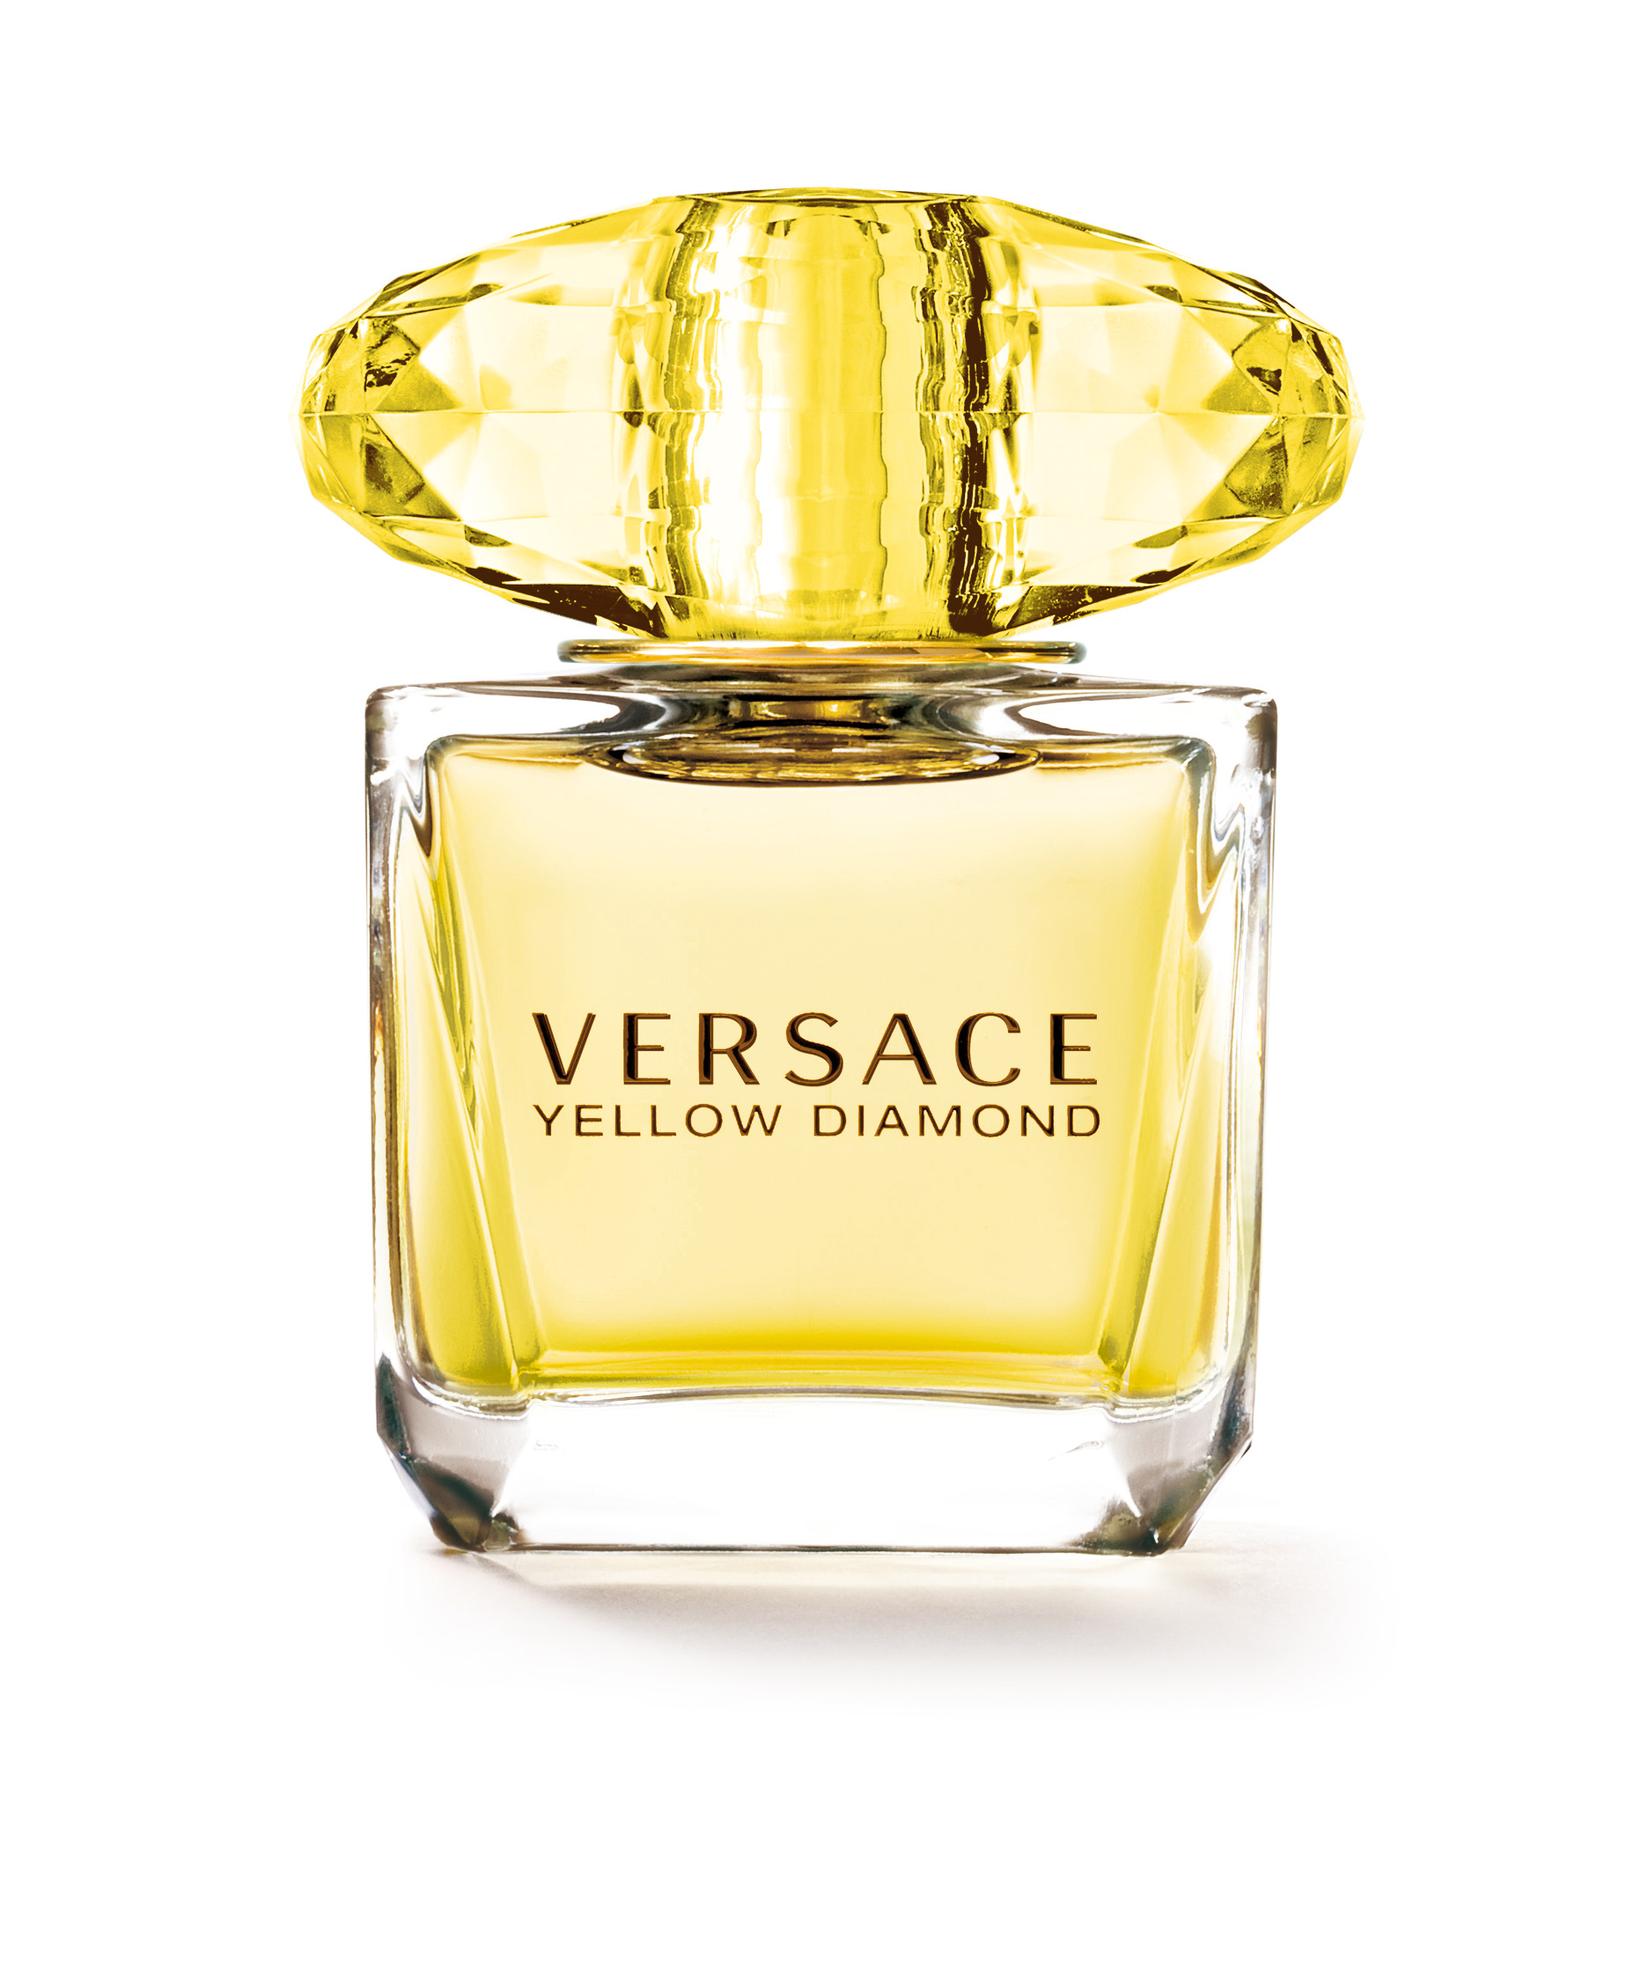 VERSACE Ženski parfem Yellow Diamond Intense Edp Natural spray 30ml